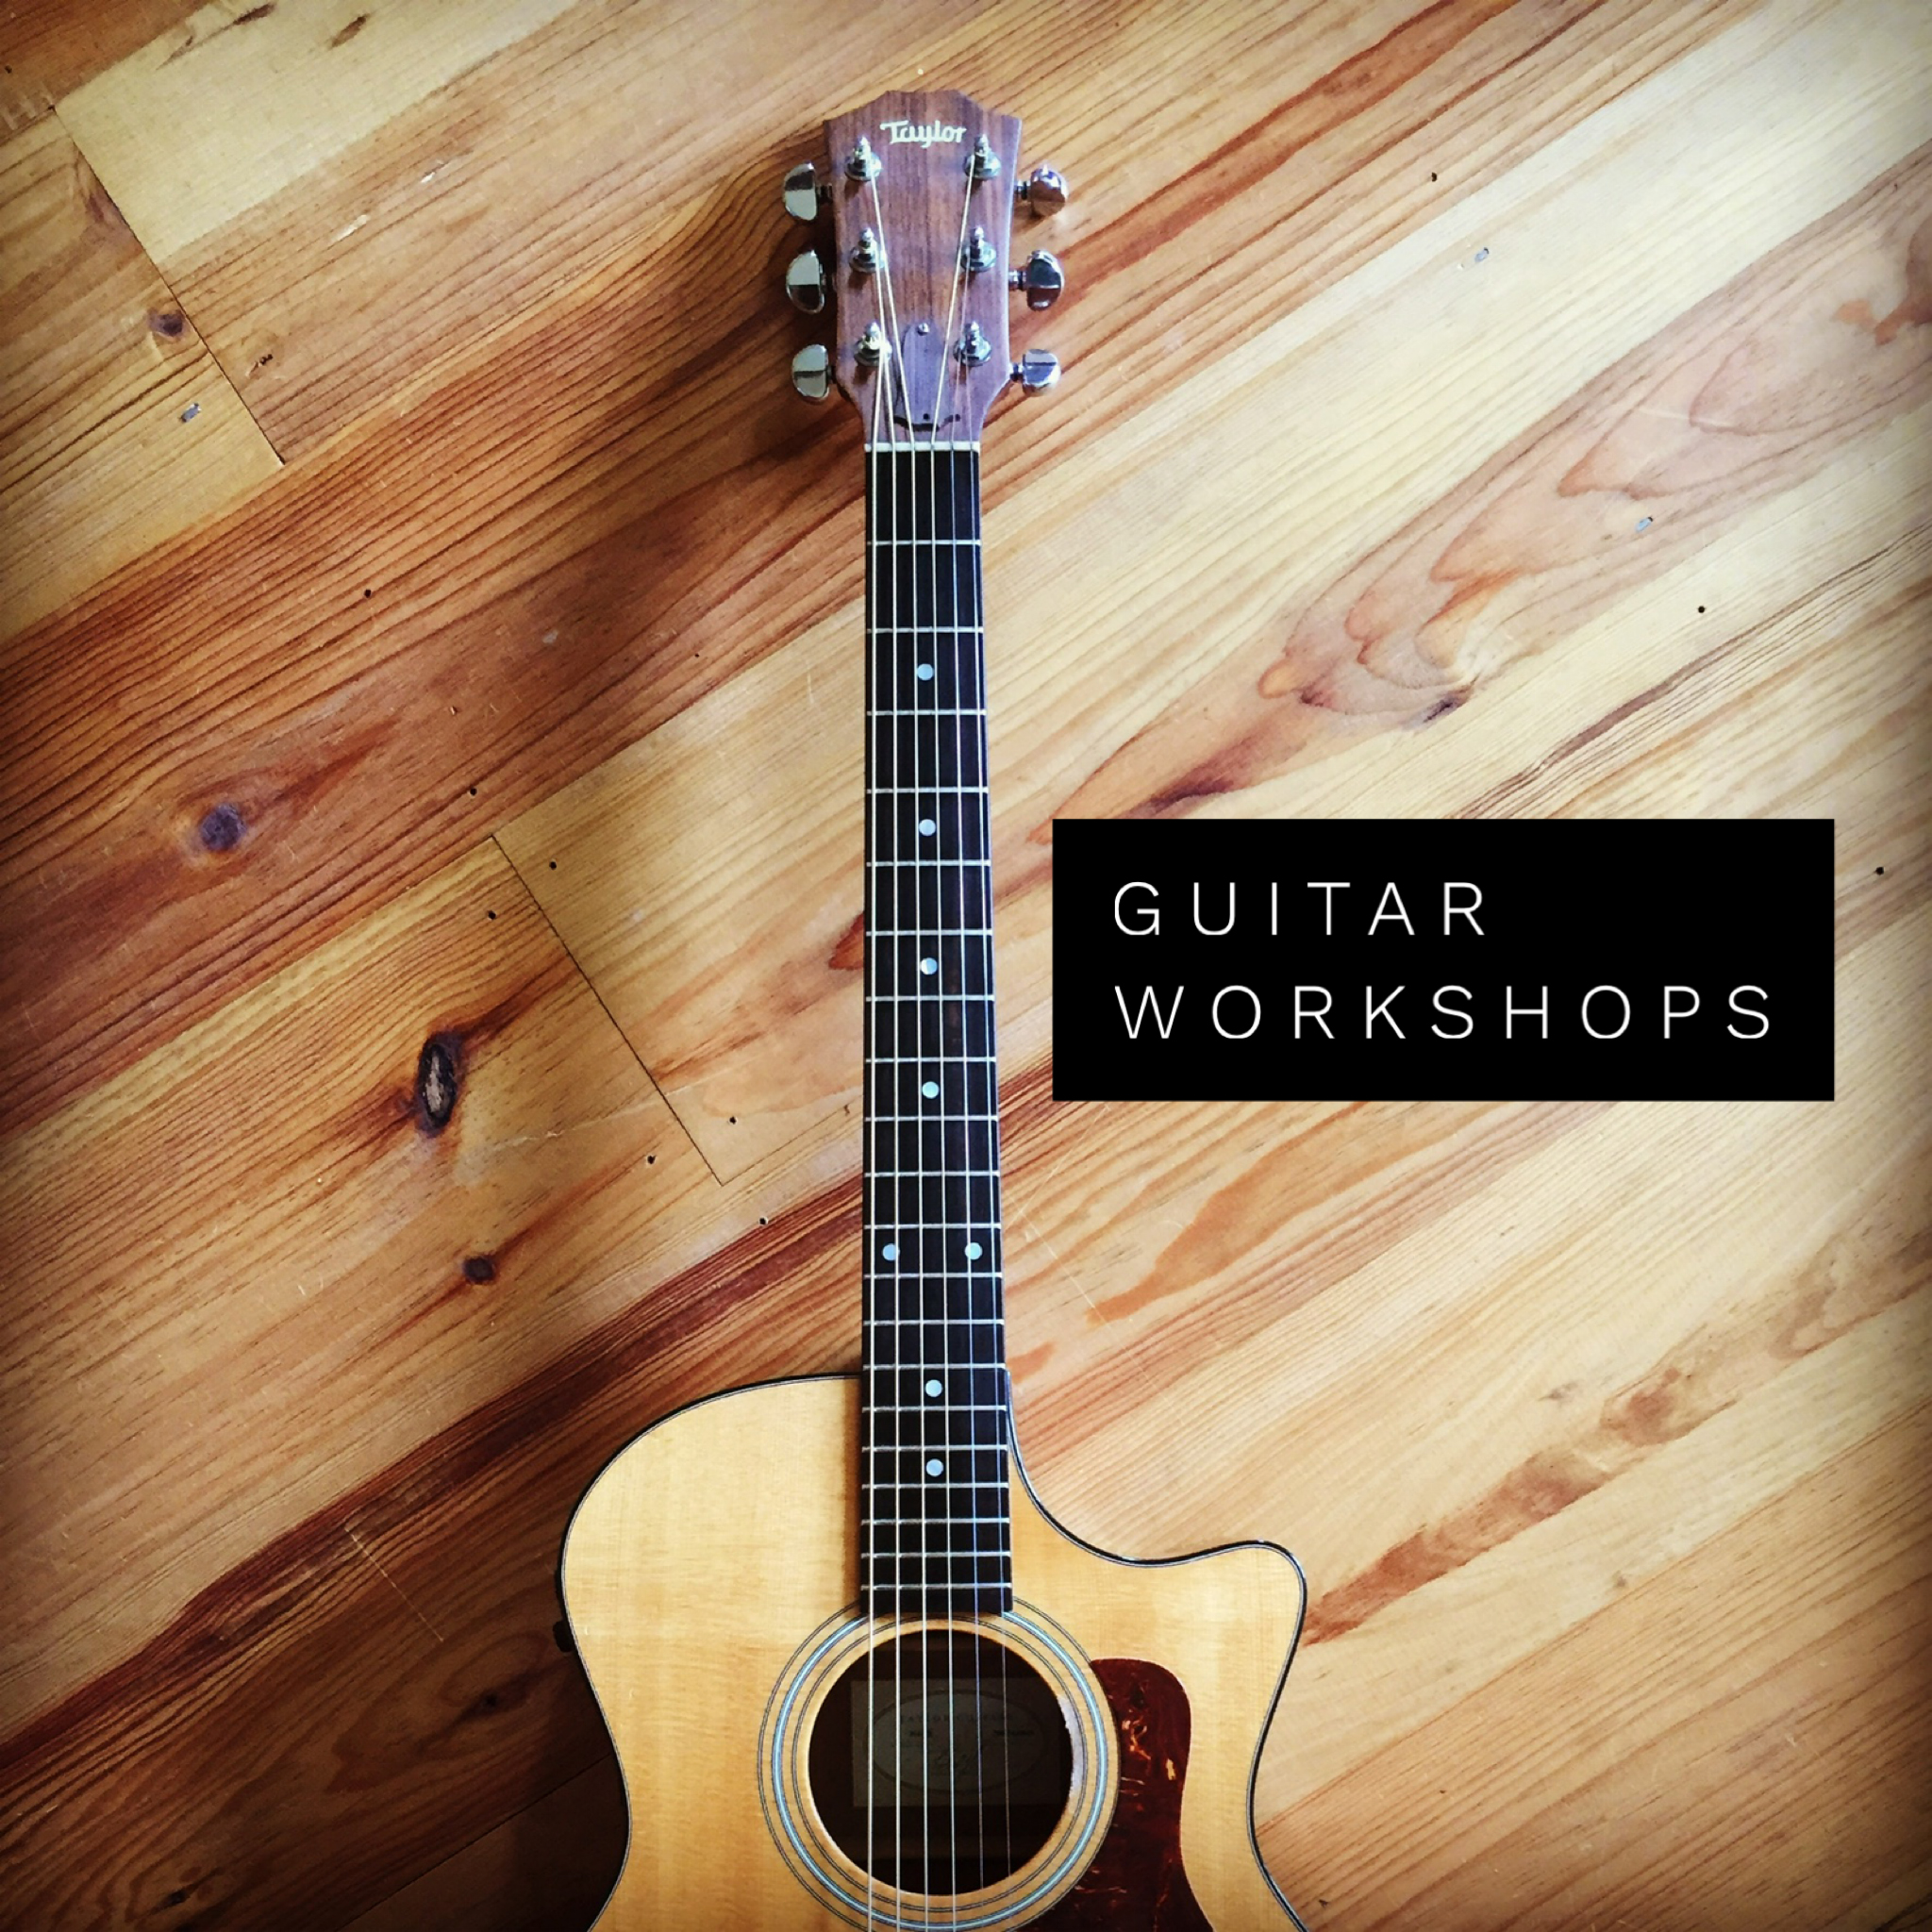 Whalebone guitar workshops